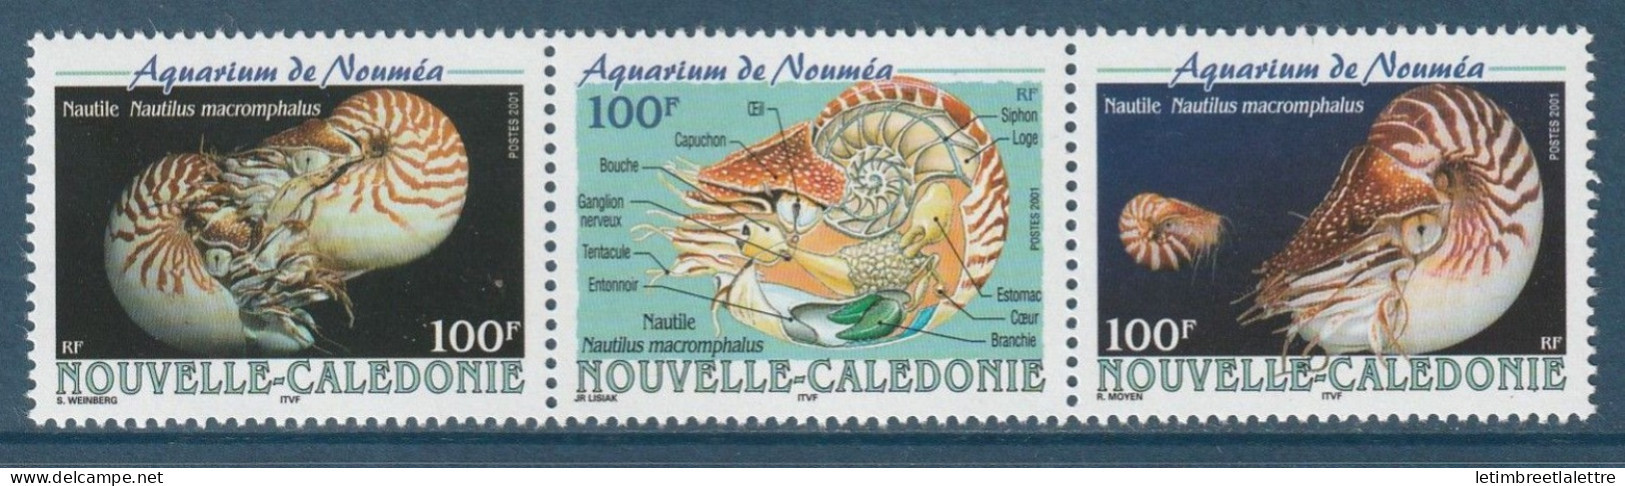 Nouvelle Calédonie - YT N° 840 à 842 ** - Neuf Sans Charnière - 2001 - Neufs